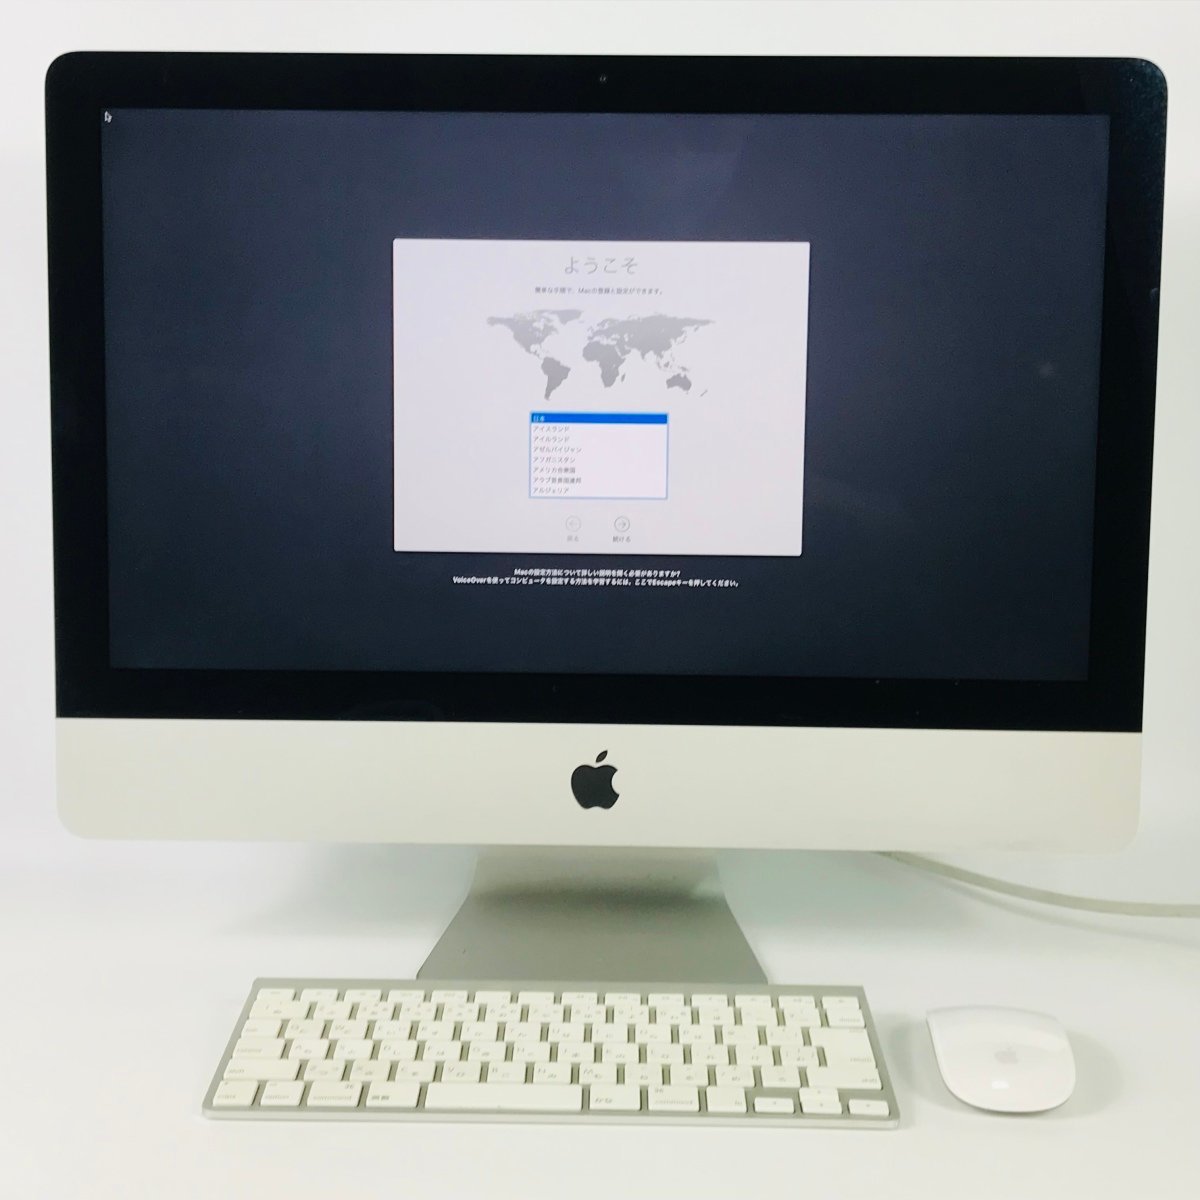 正規店仕入れの  2013) (Late ME086J/A 21.5インチ Apple iMac デスクトップ型PC